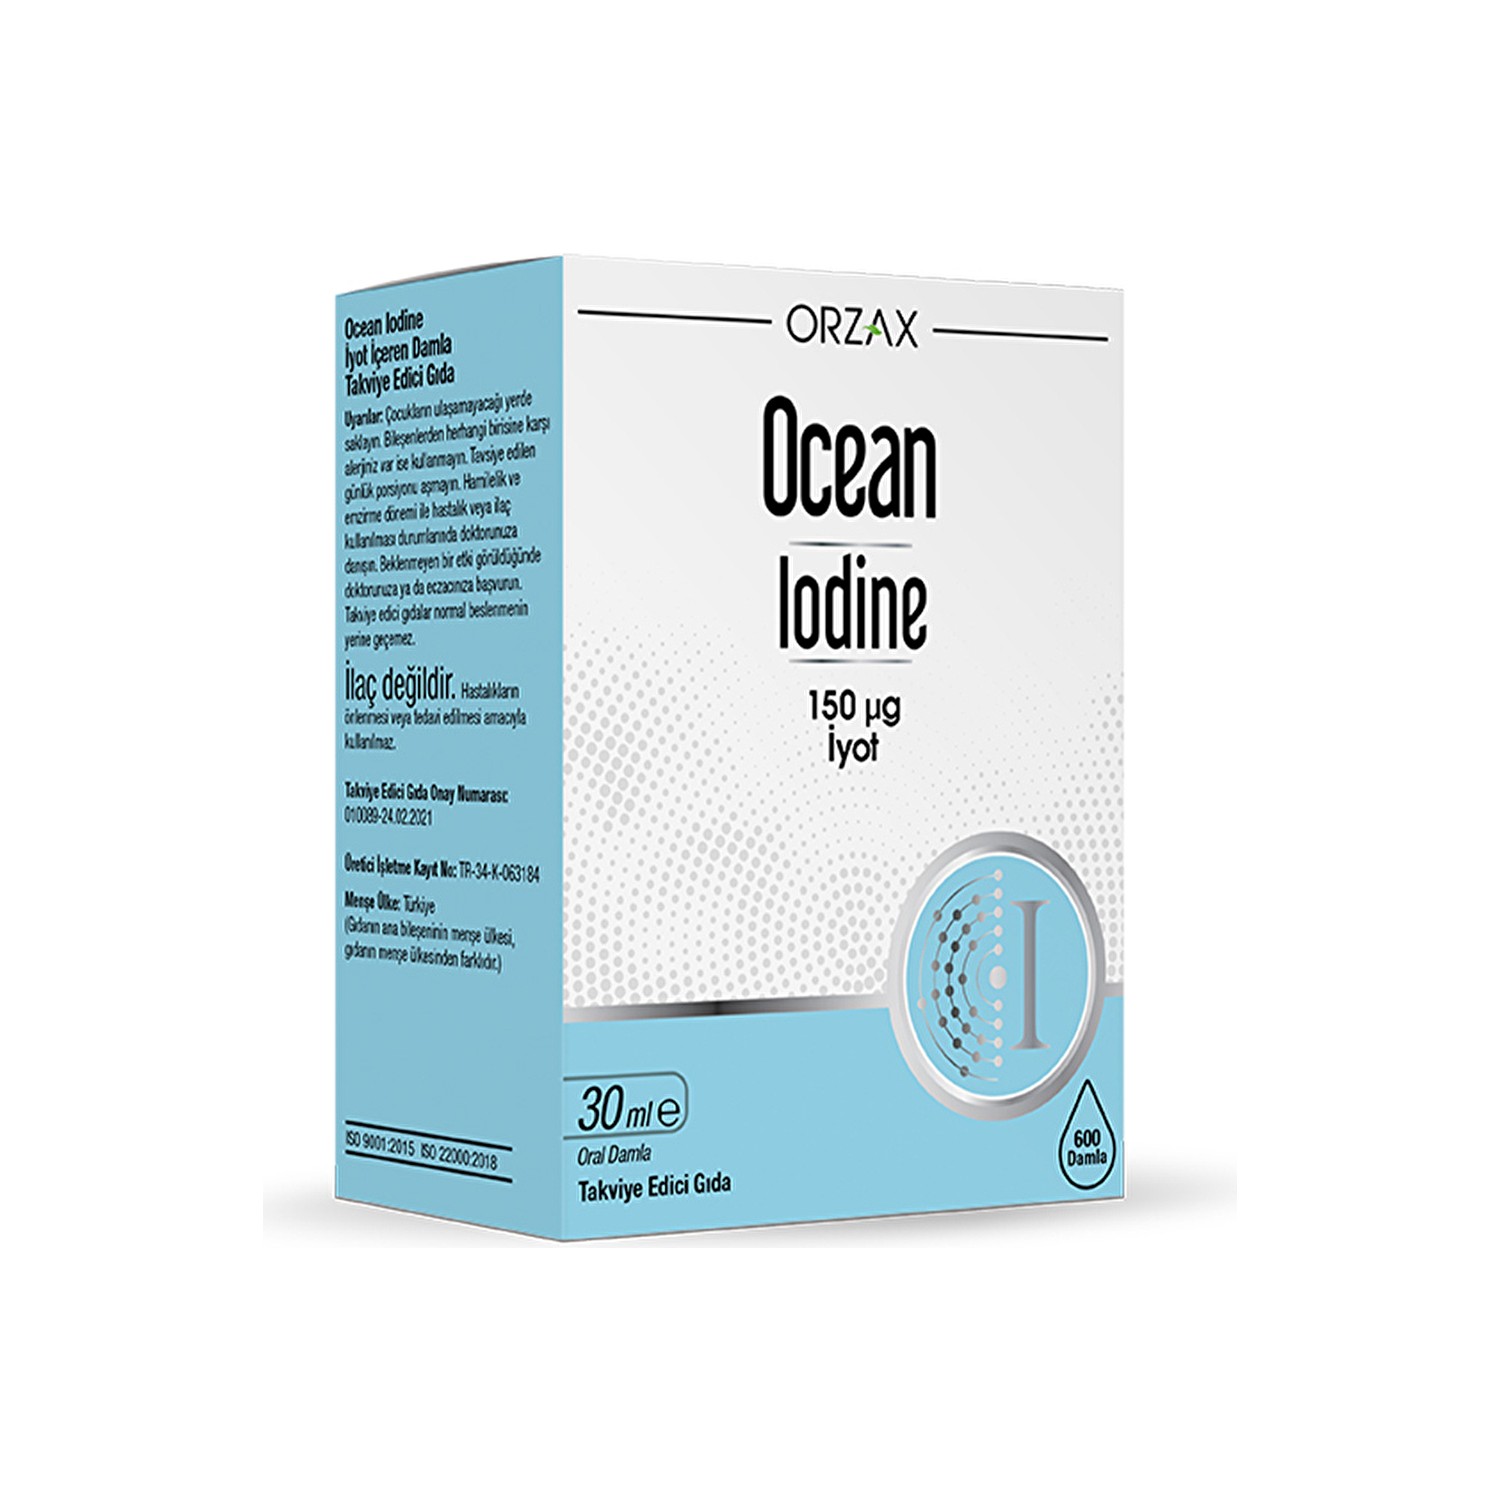 Йод 150 мкг. Йод капли Orzax. Orzax Ocean Iodine 150 MCG 30 ml Drop. Orzax Ocean Iodine 150.